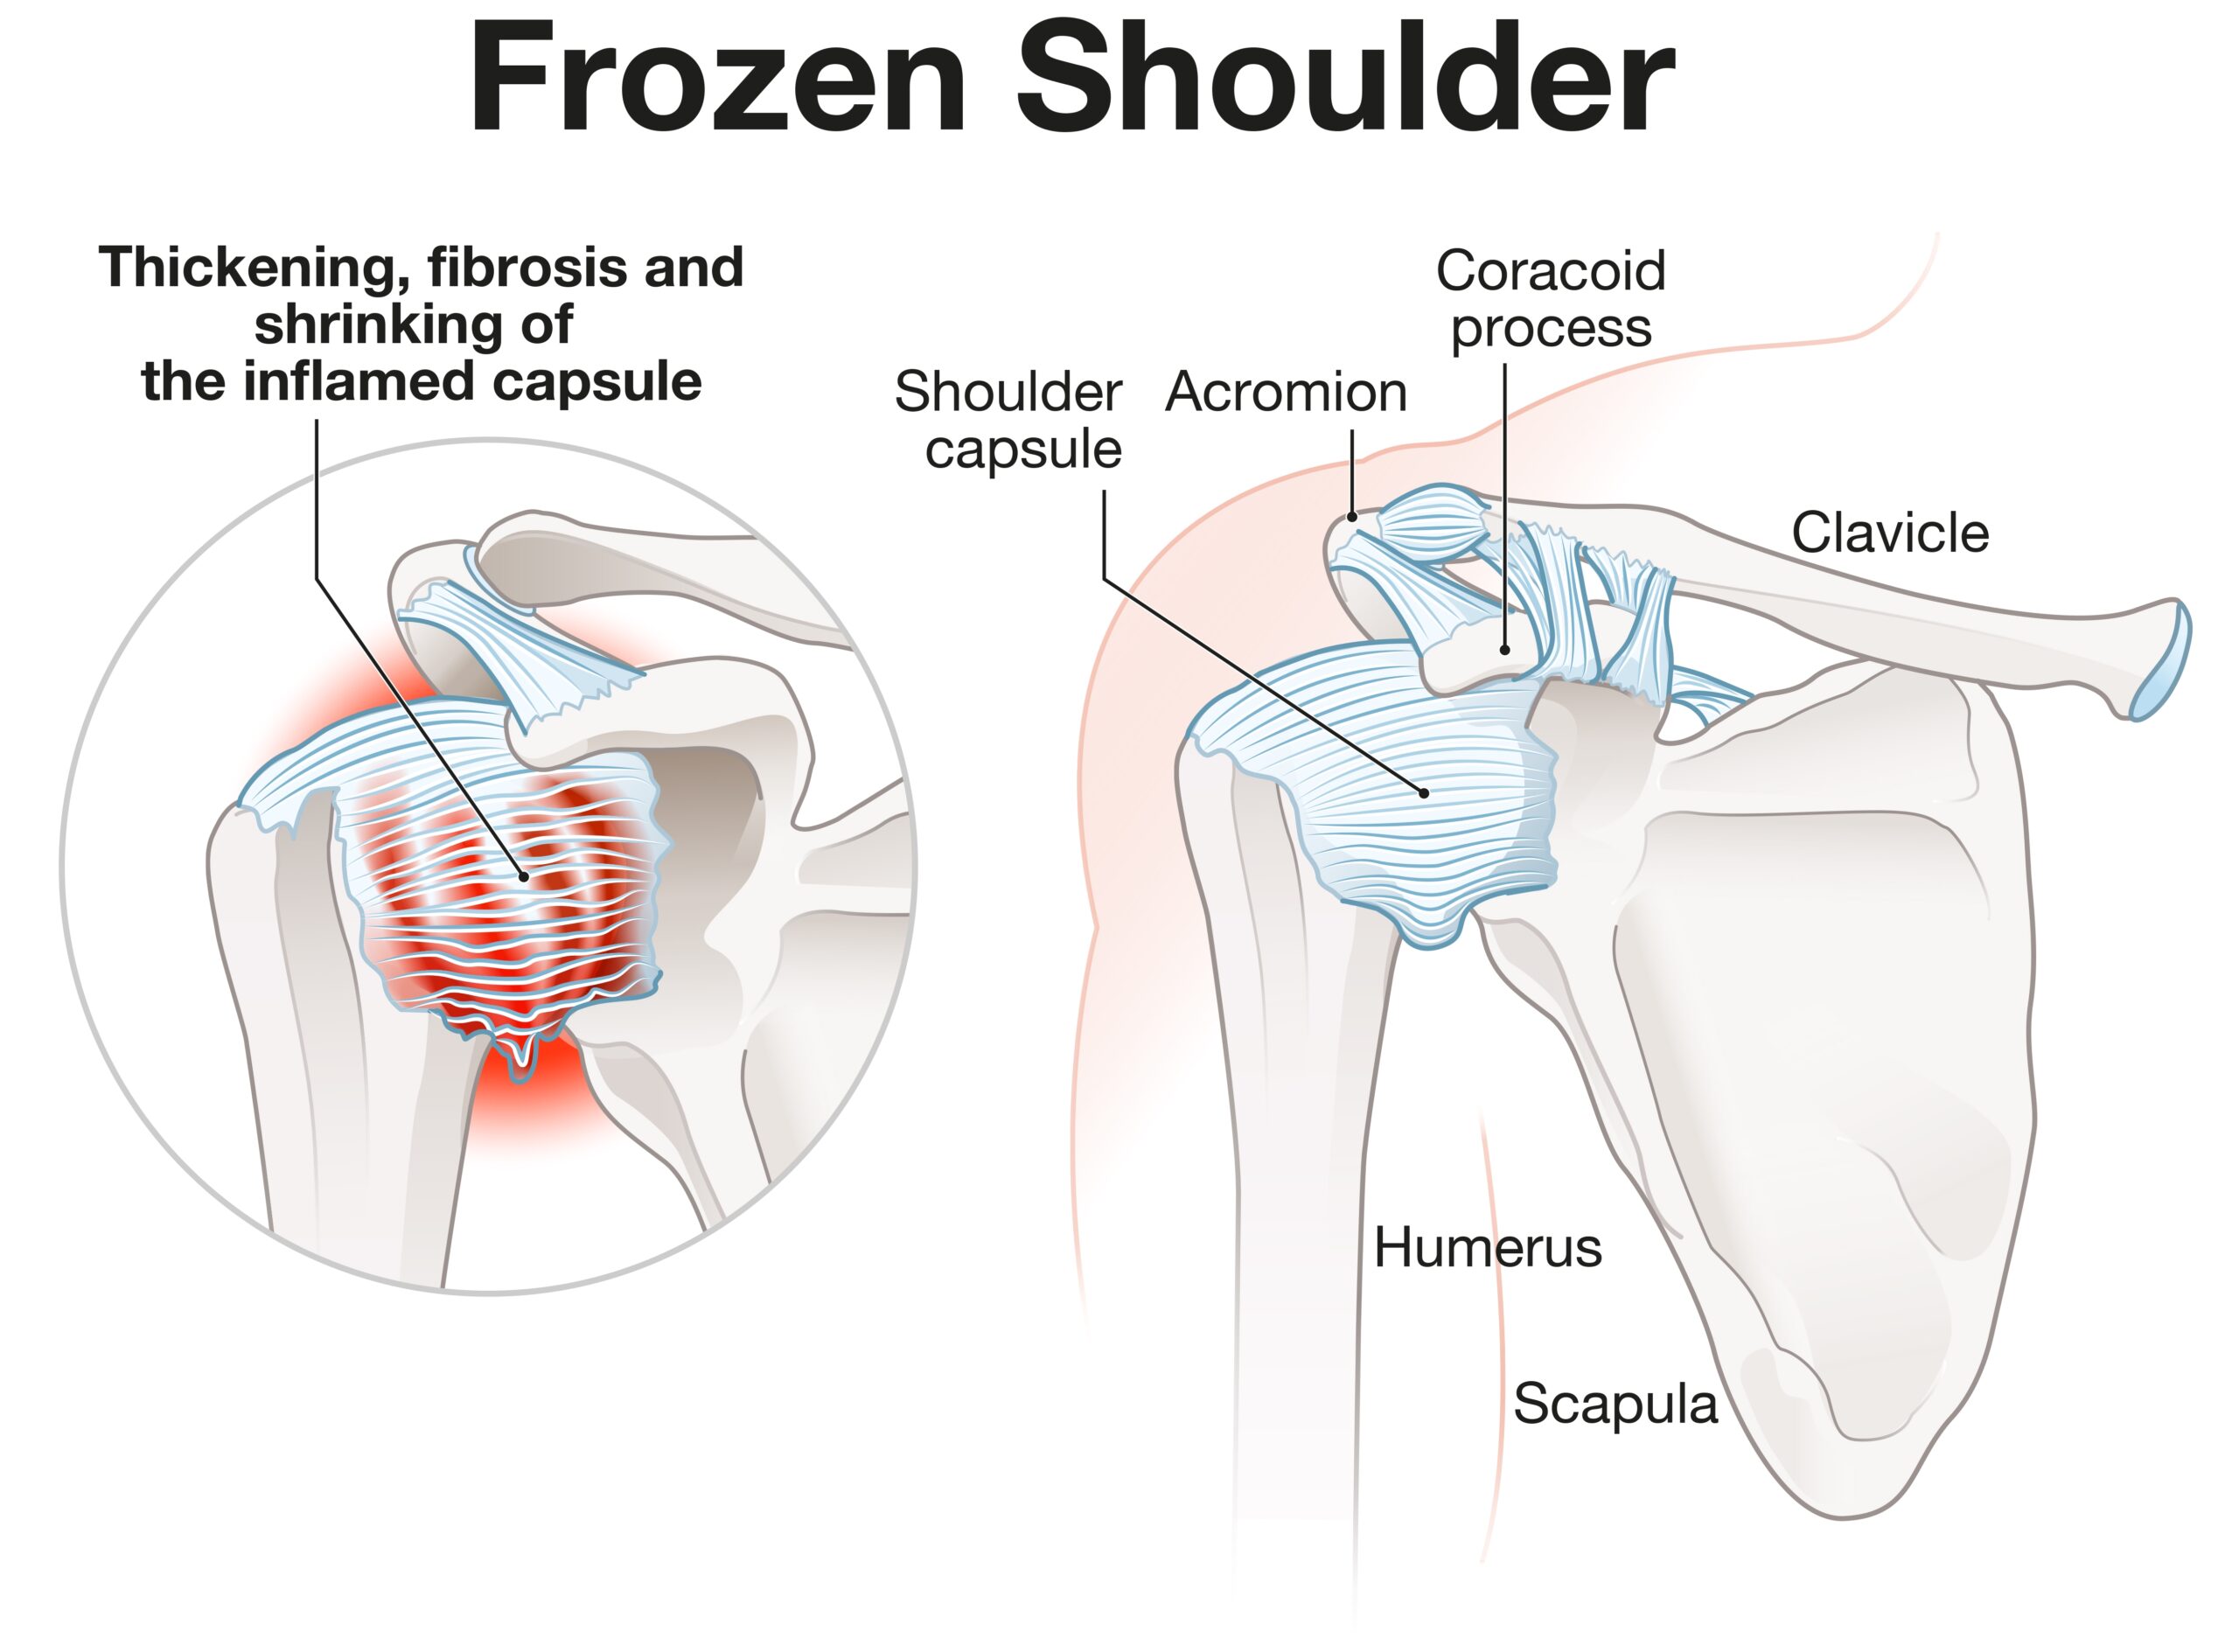 Een frozen shoulder, ook wel adhesieve capsulitis genoemd